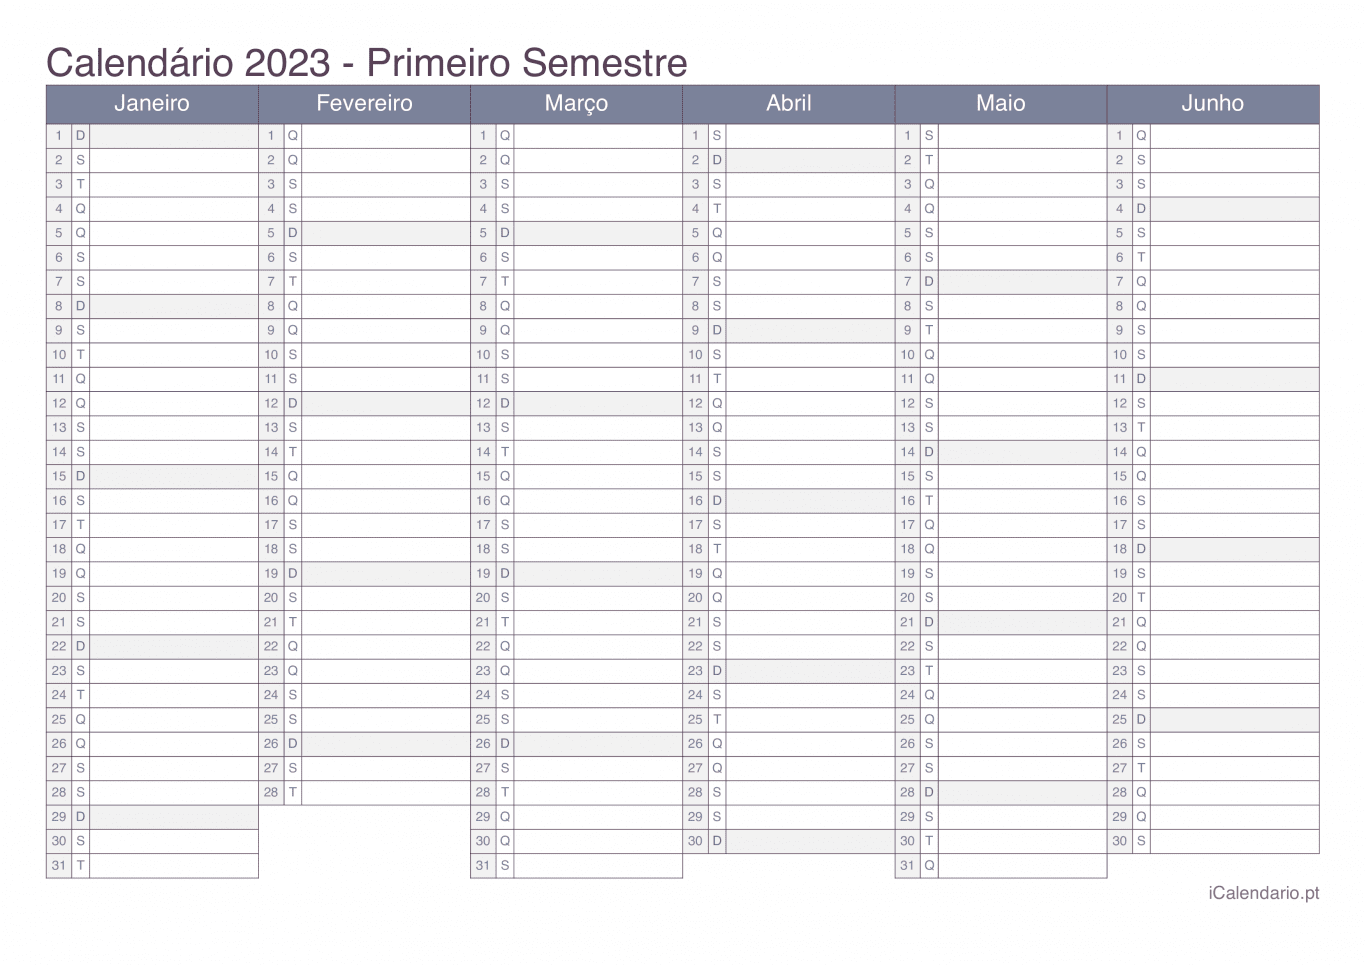 Calendário por semestre 2023 - Office